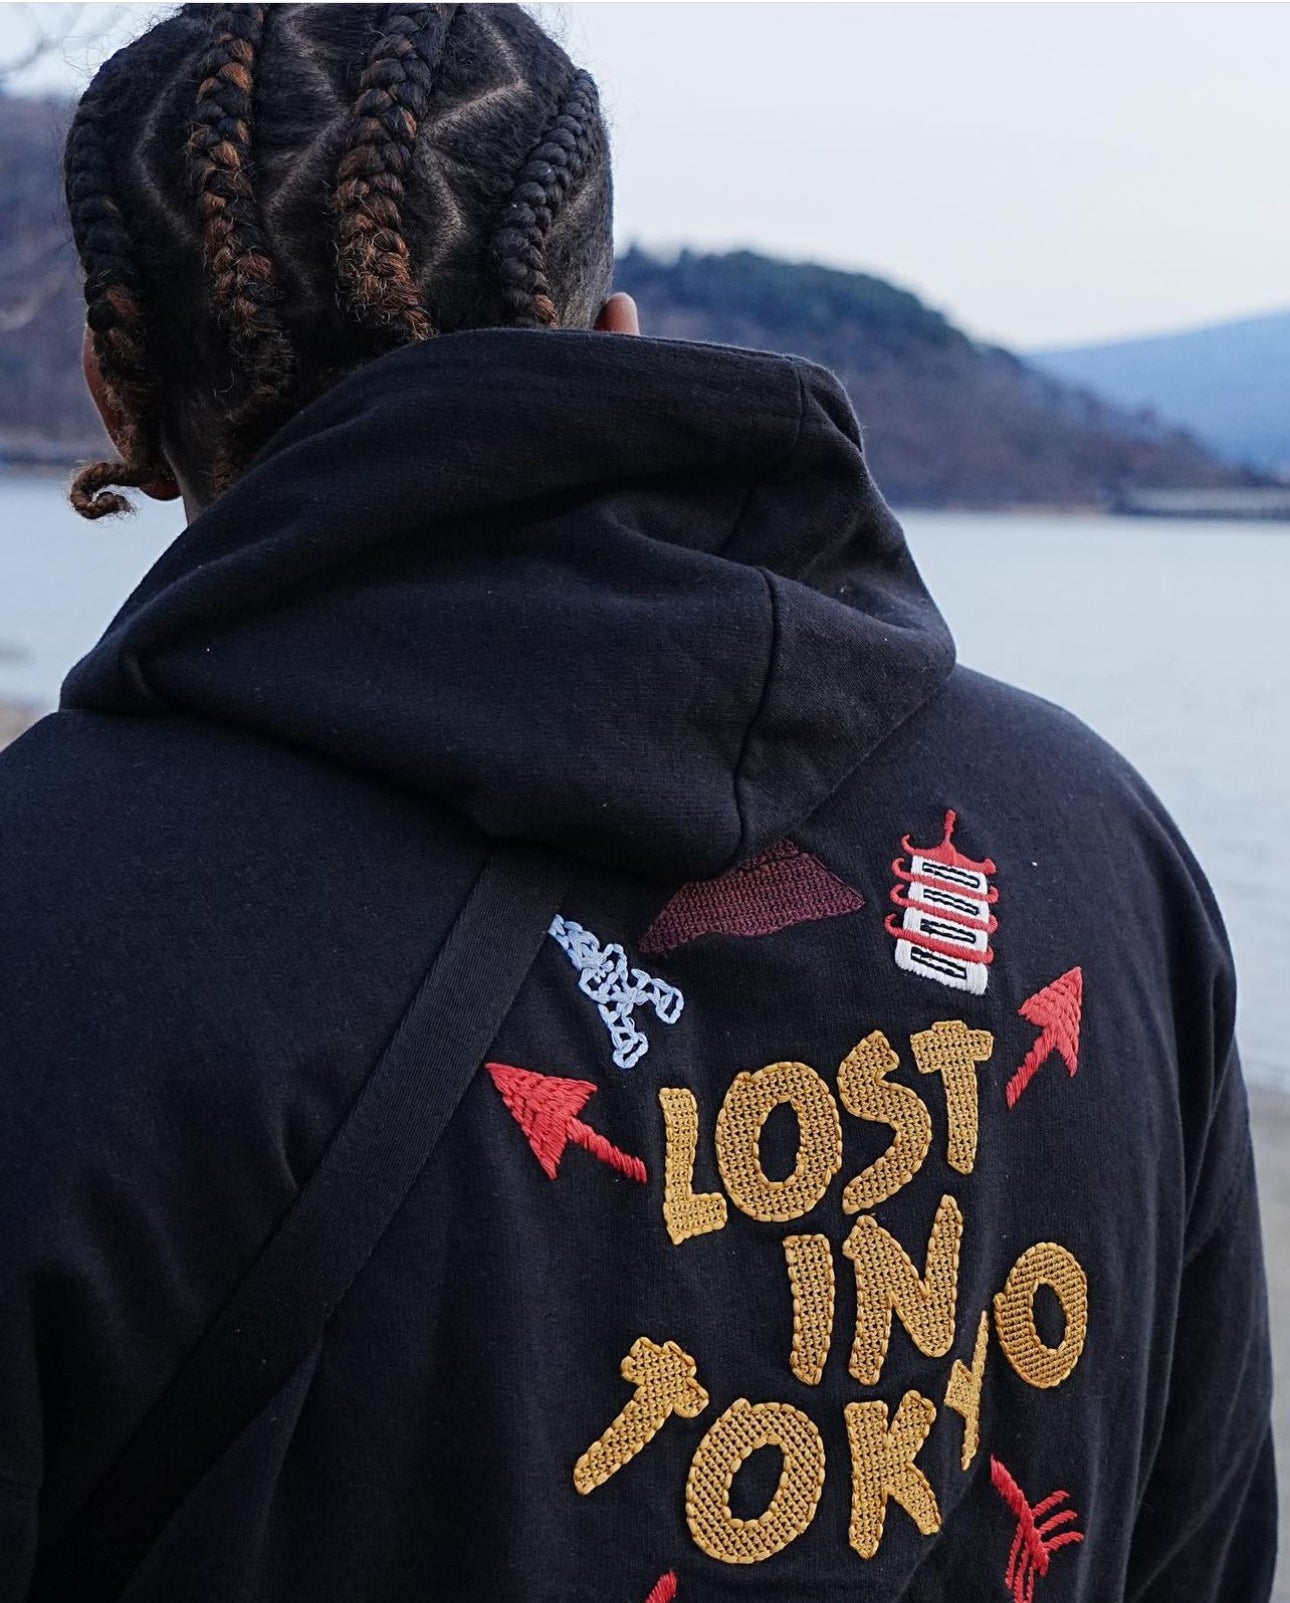 Lost in Tokyo hoodie